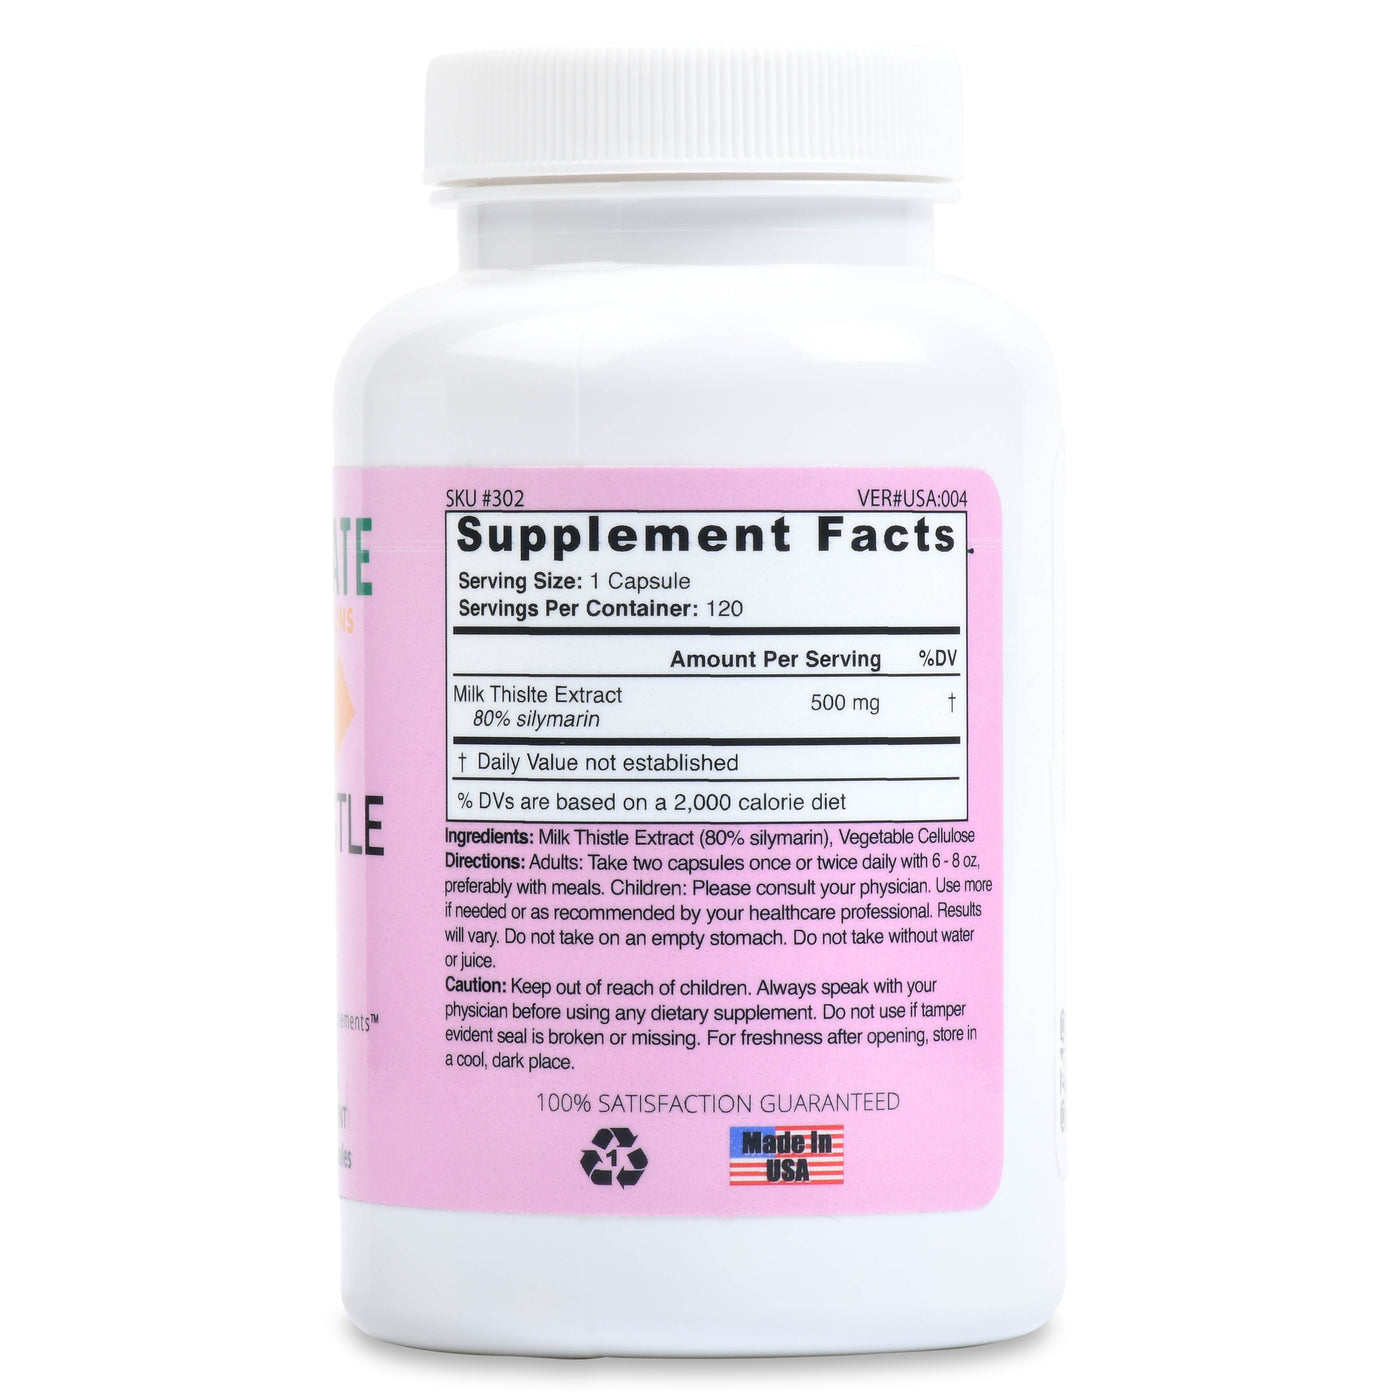 Milk Thistle Extract Supplement [80% silymarin]